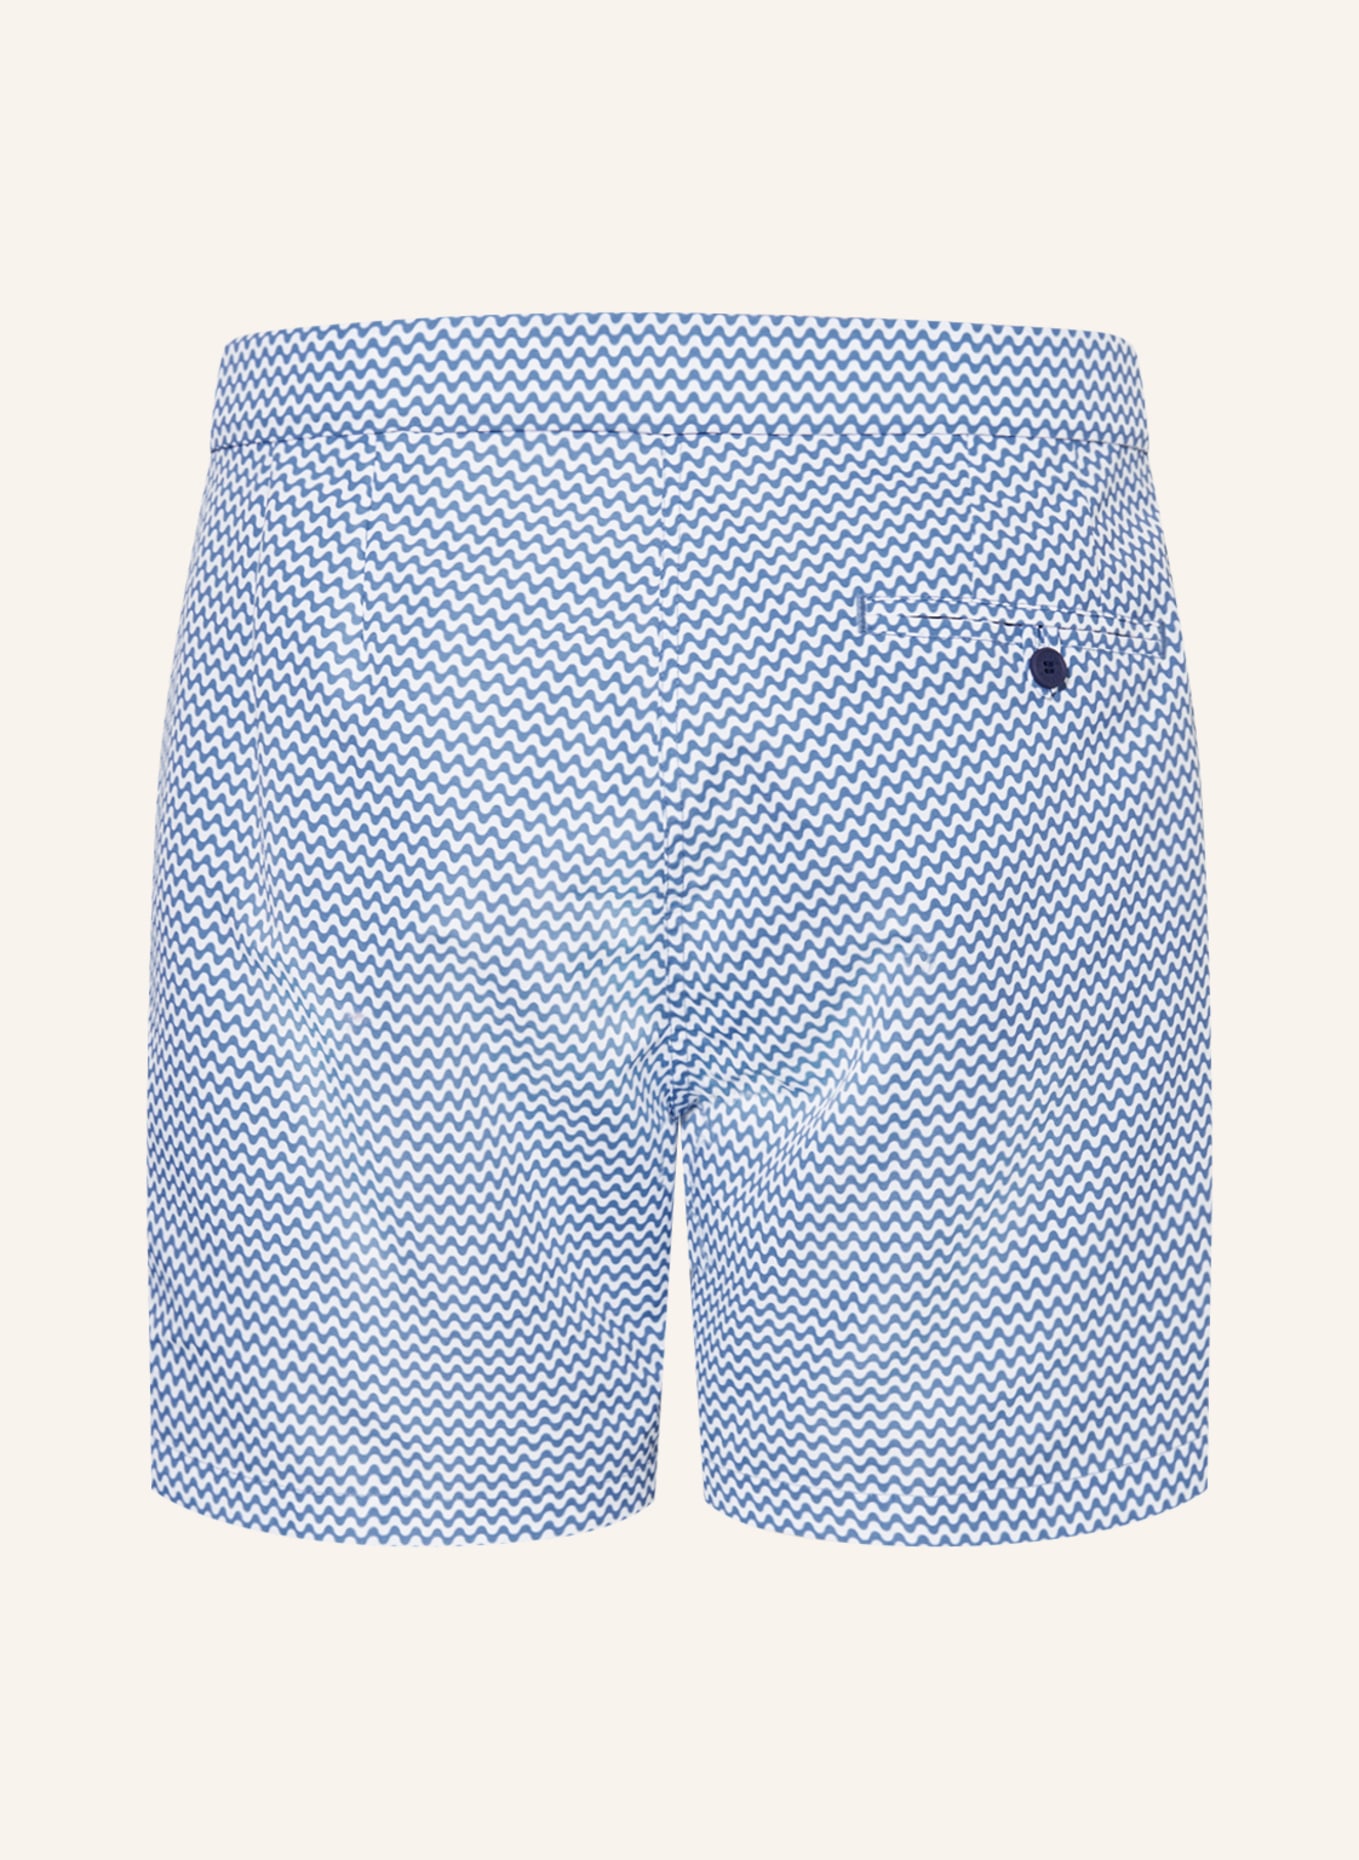 FRESCOBOL CARIOCA Swim shorts COPACABANA, Color: BLUE/ WHITE (Image 2)